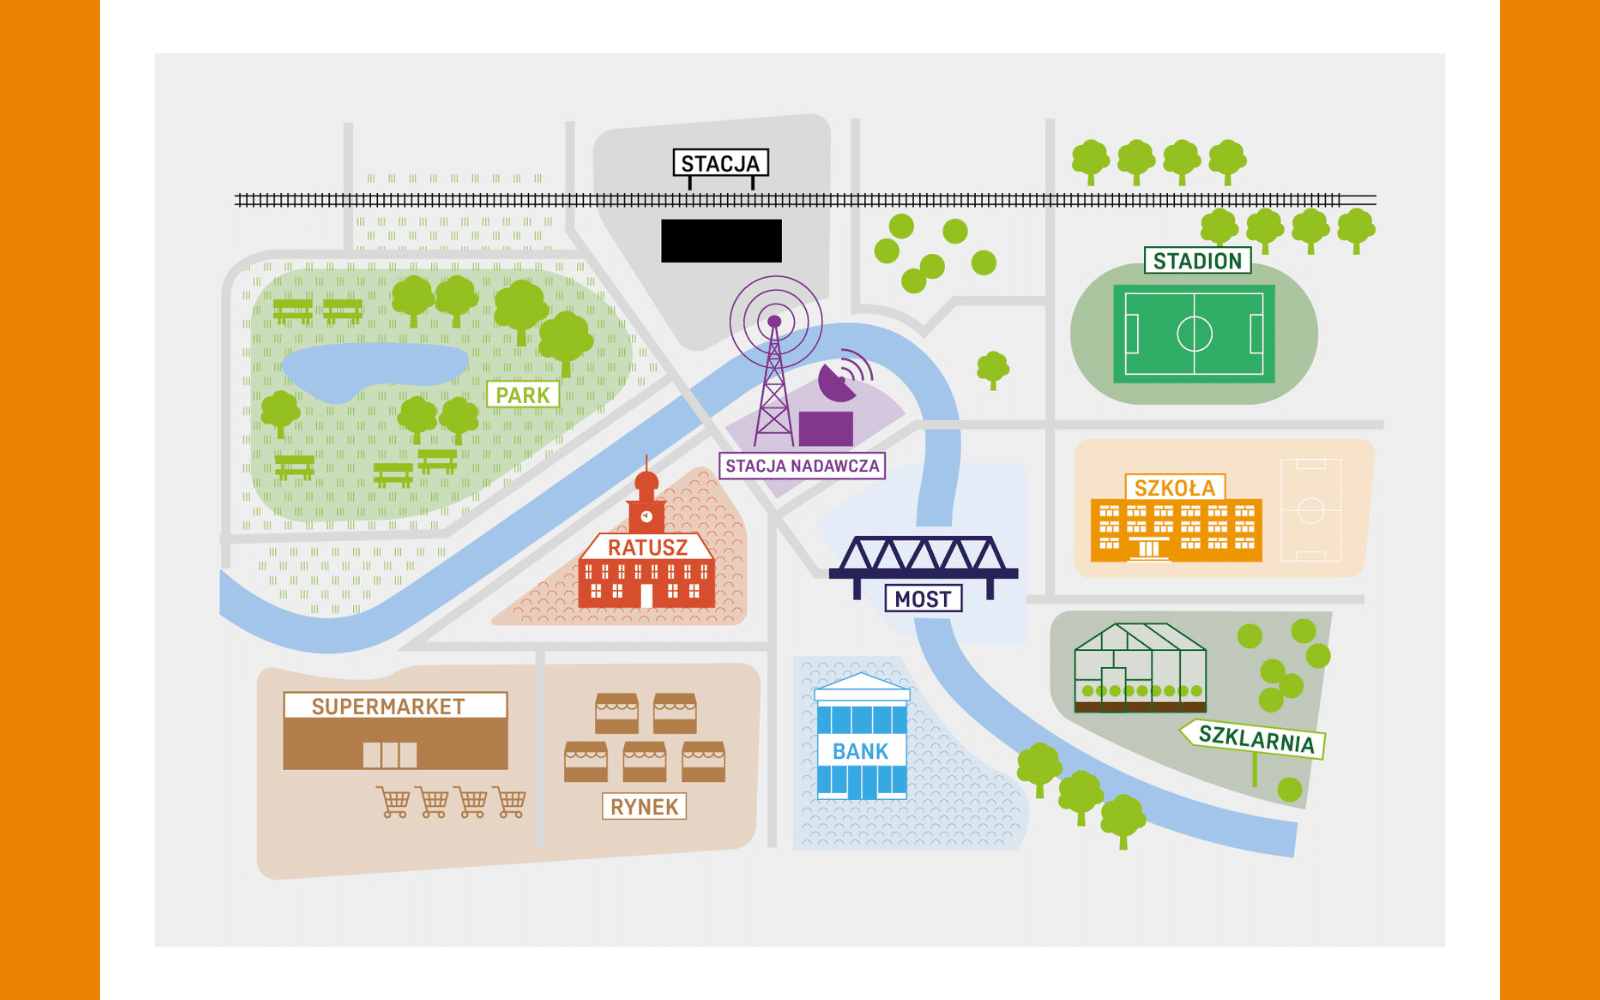 Grafika przedstawia mapę fikcyjnego miasteczka wsparcia młodych osób. Są w nim: park, stacja kolejowa, stacja nadawcza, stadion, ratusz, most, szkoła, supermarket, rynek, bank i szklarnia.